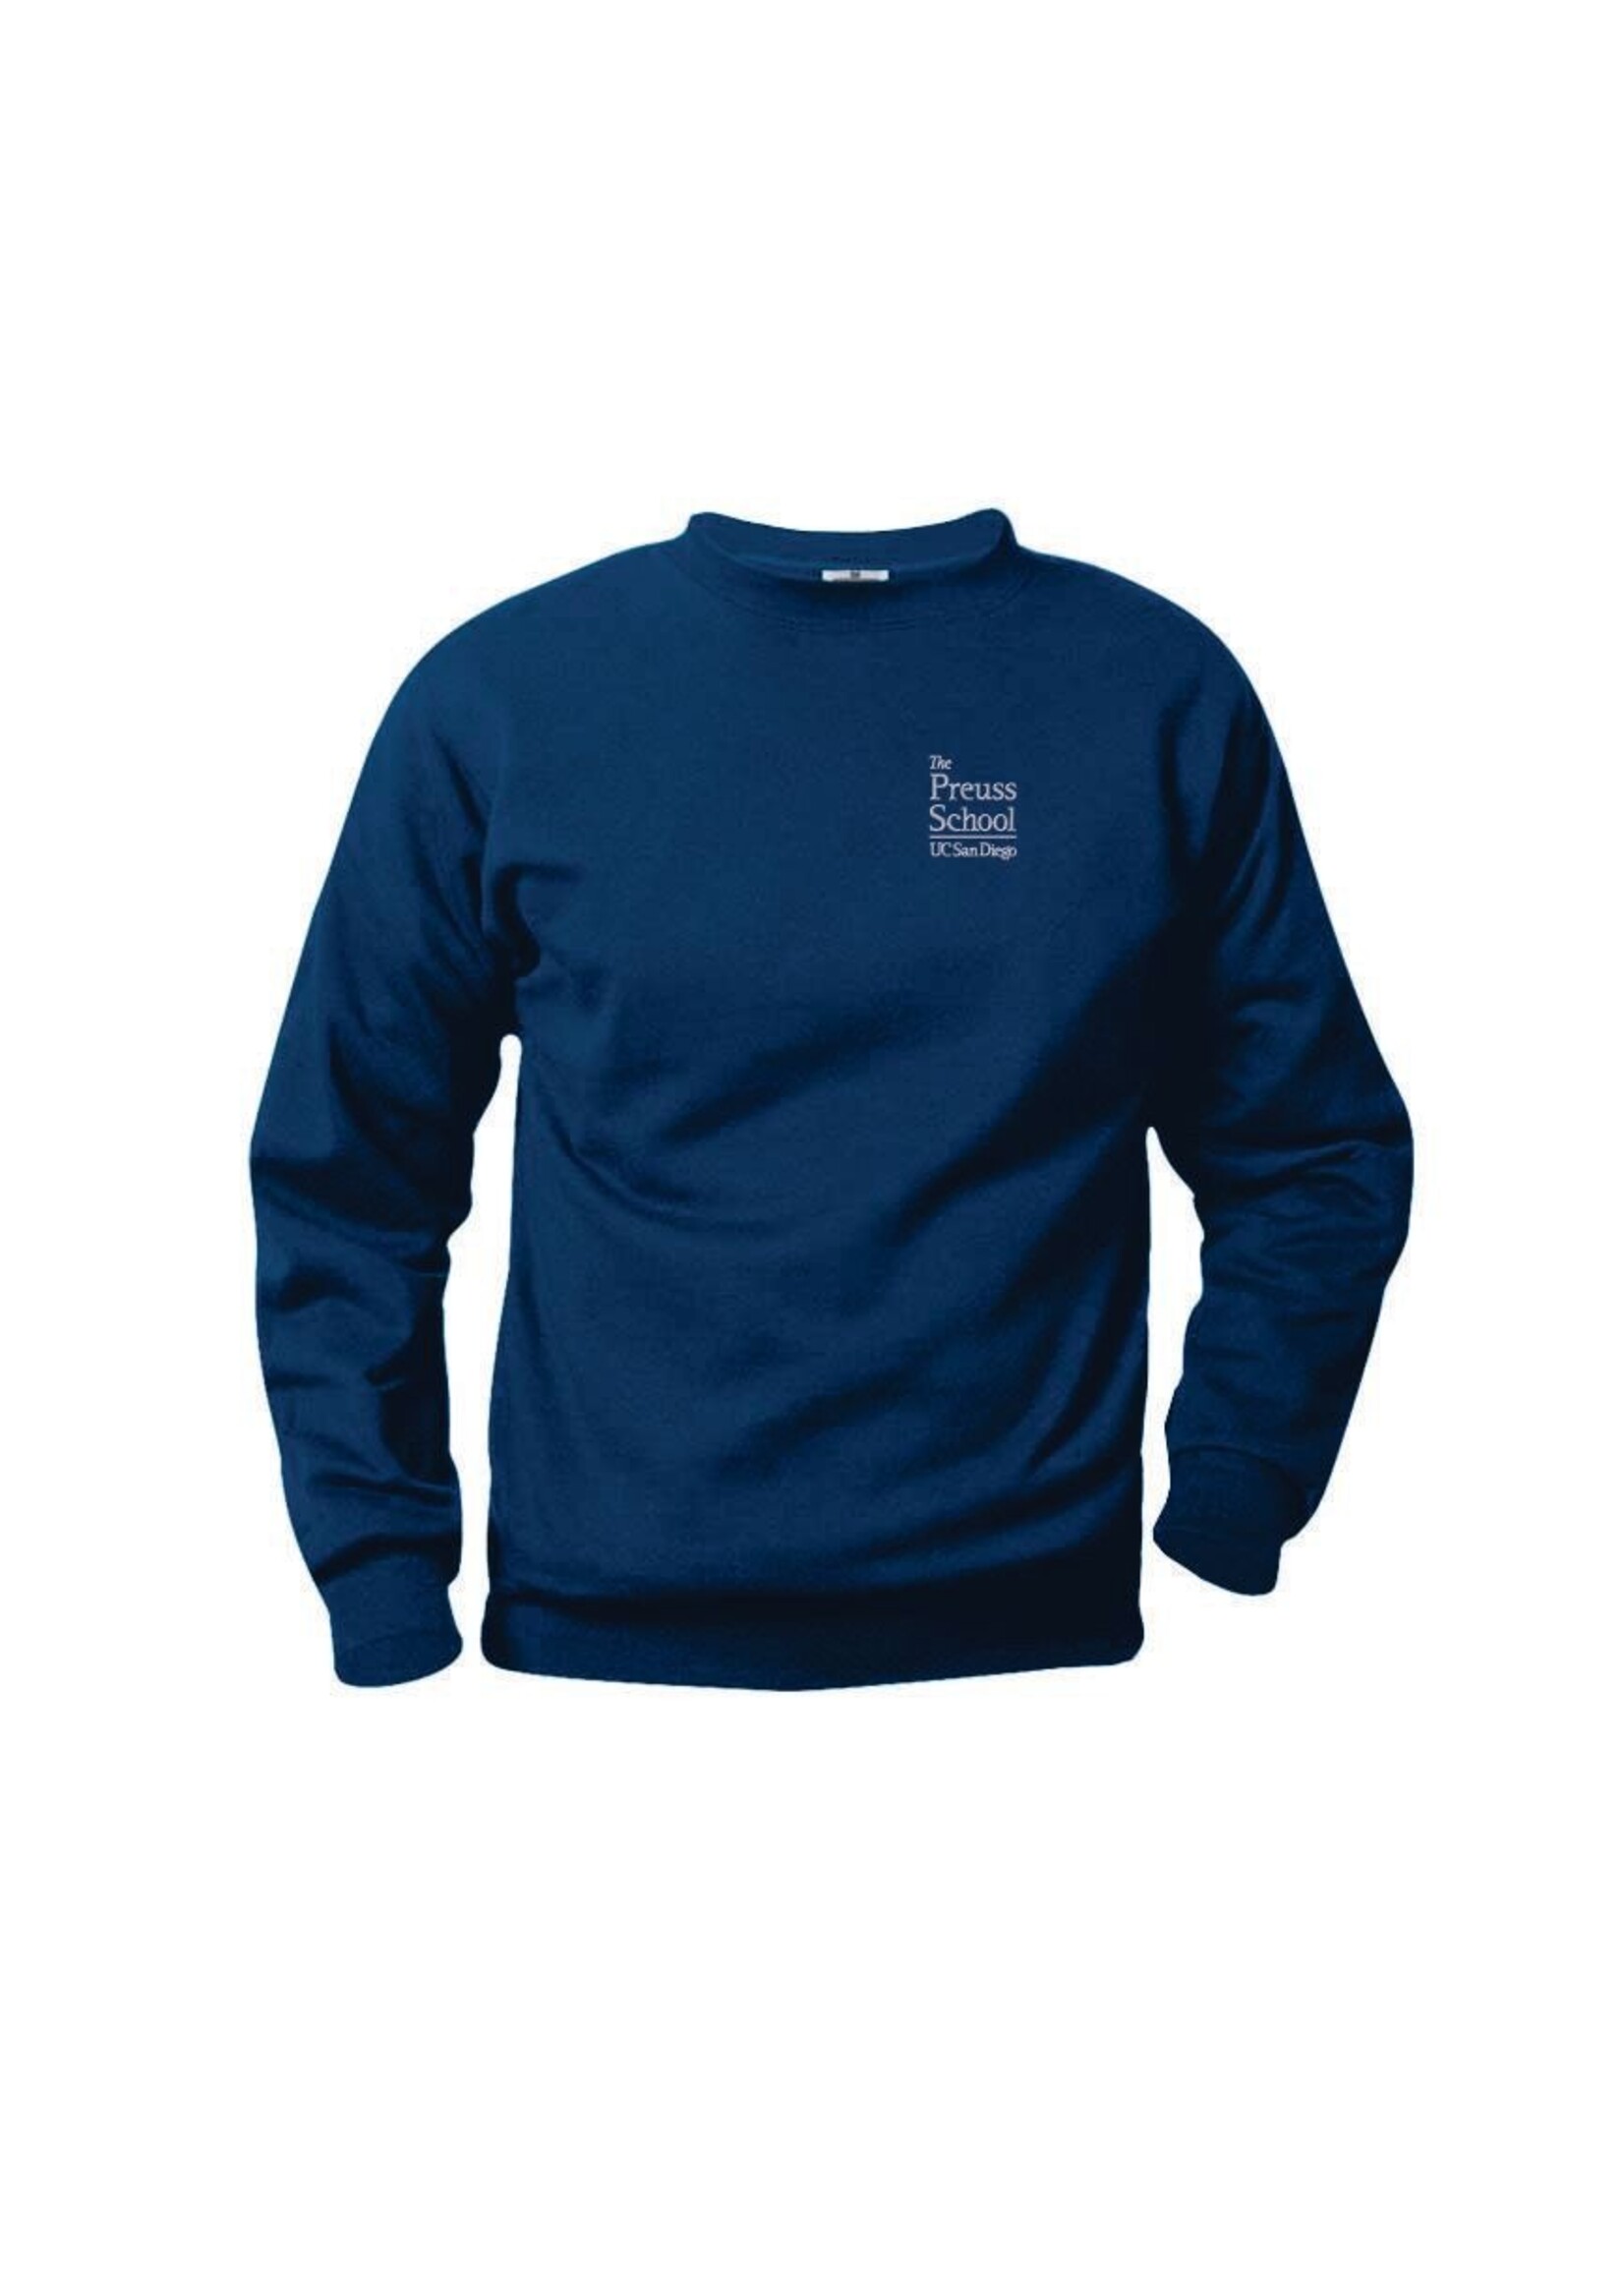 Preuss Navy Fleece Crewneck Sweatshirt